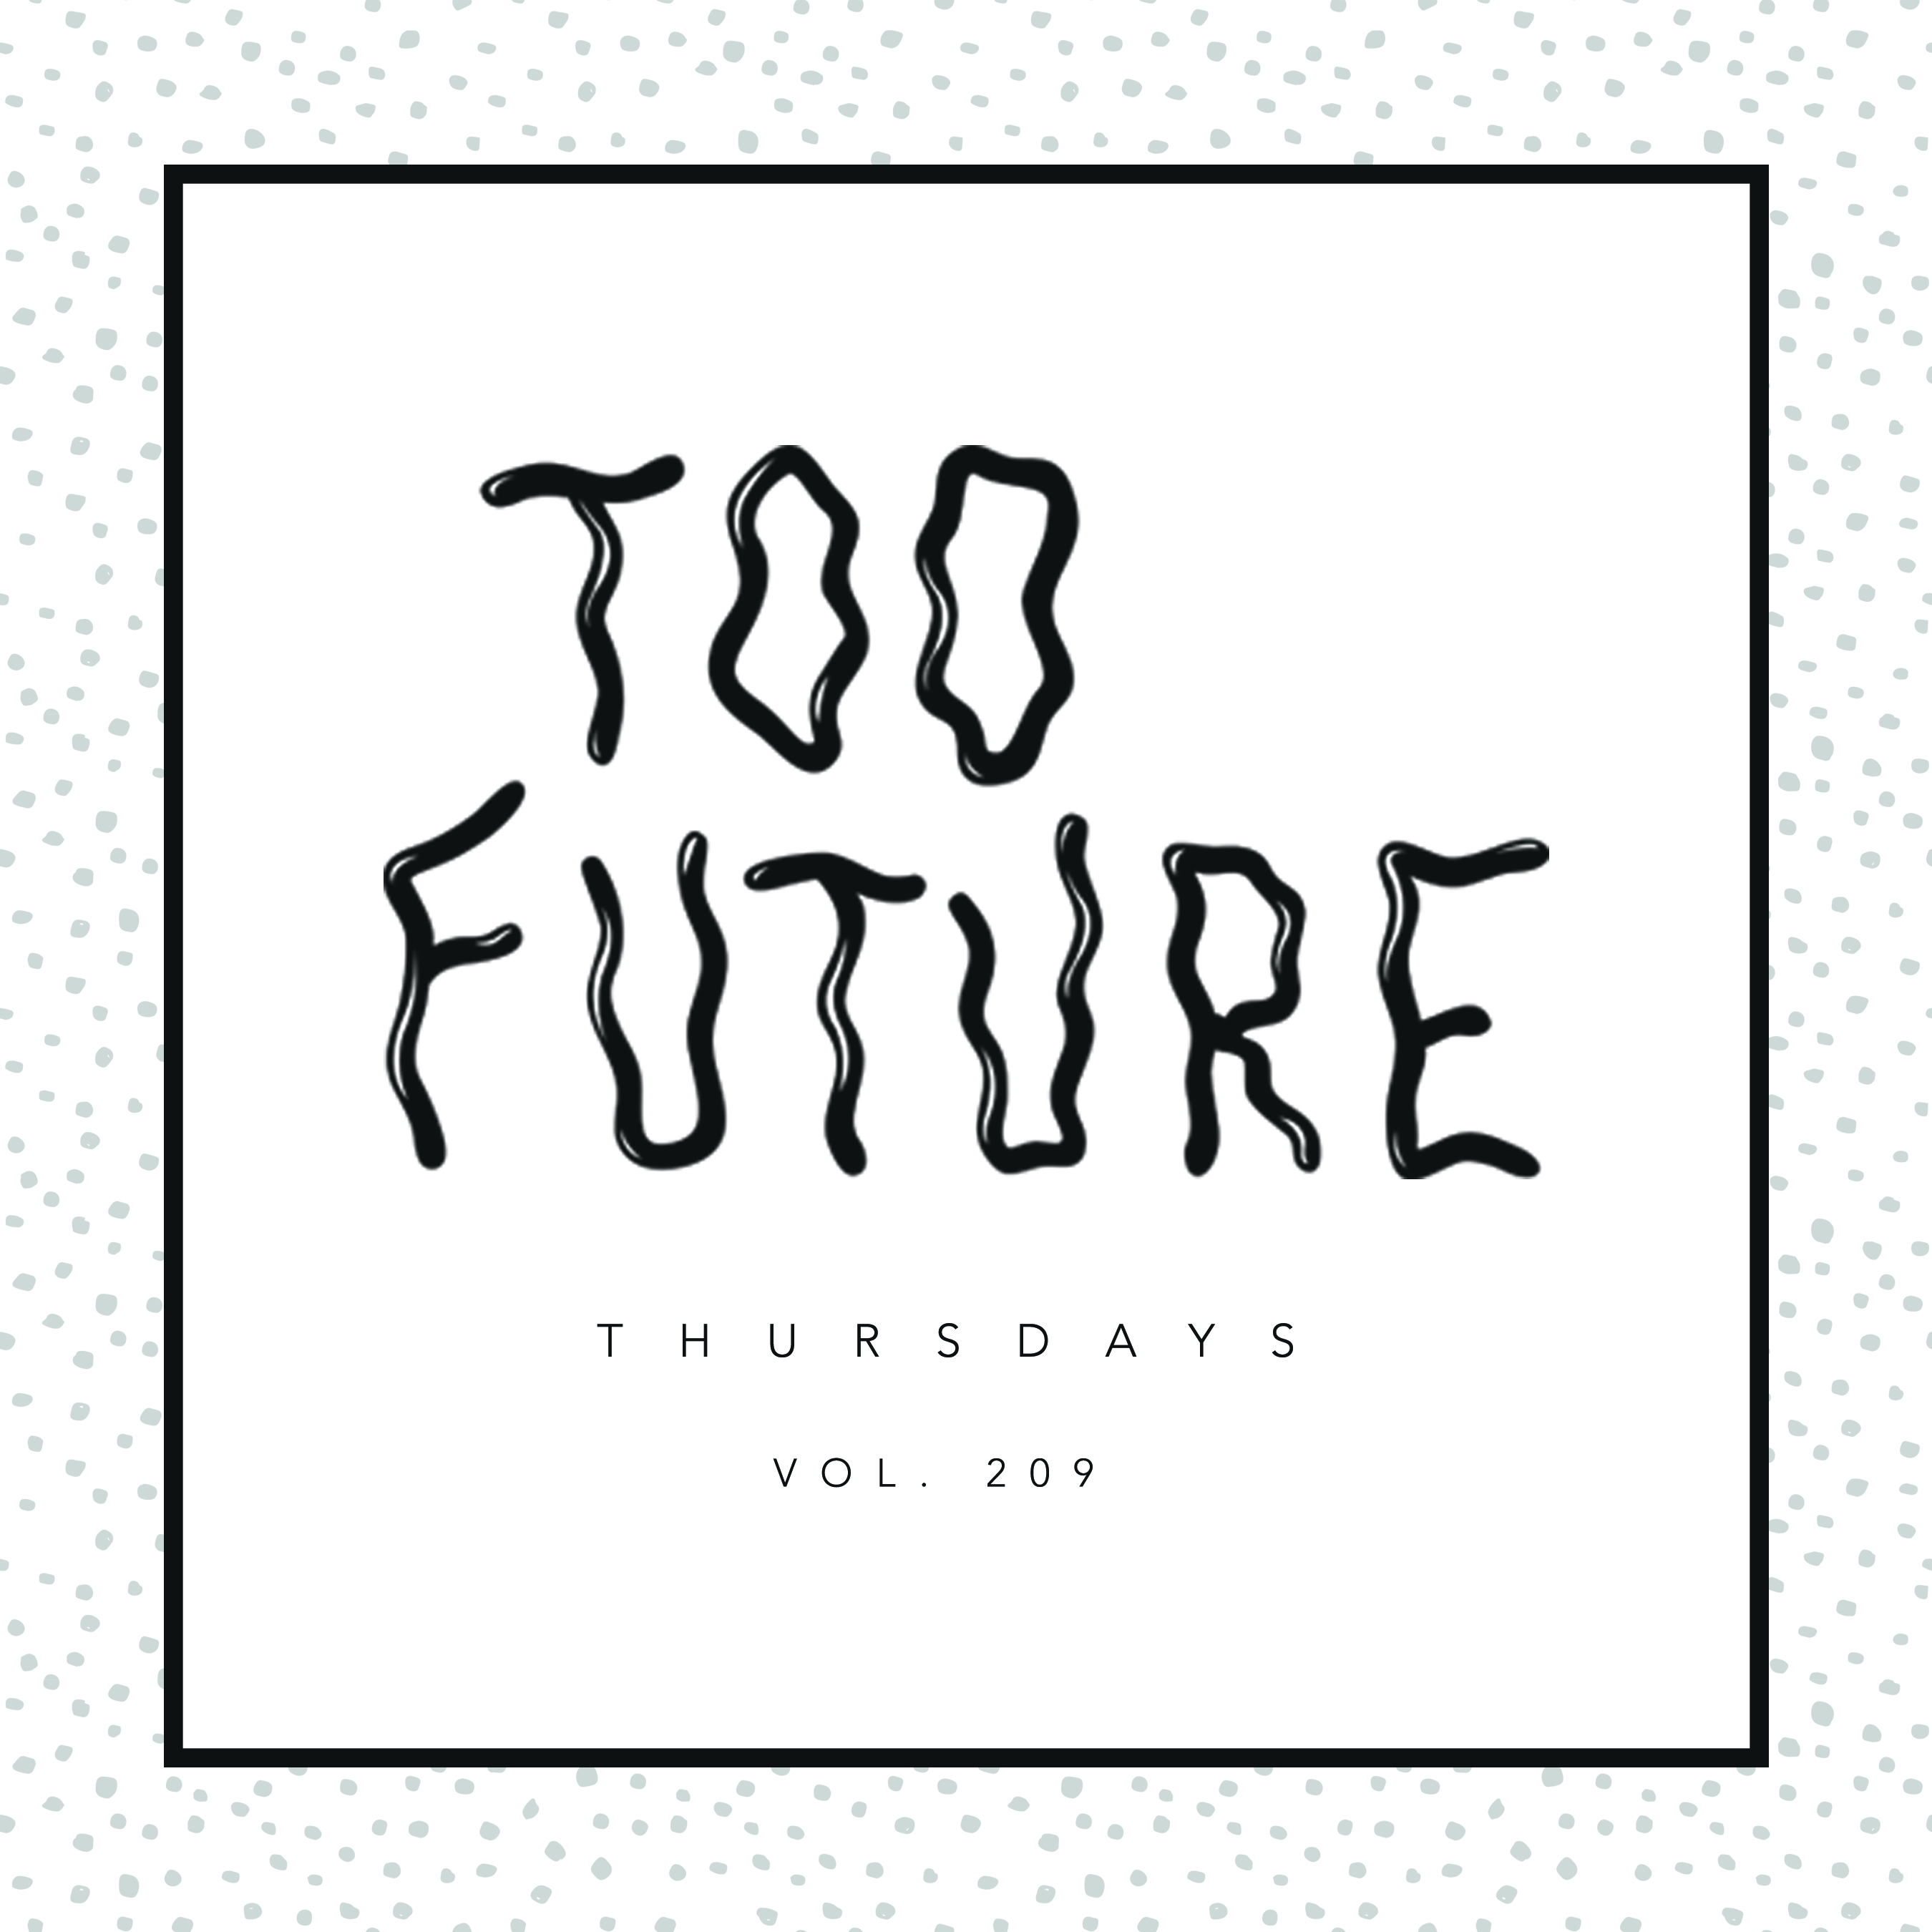 too-future-thursdays-vol-209